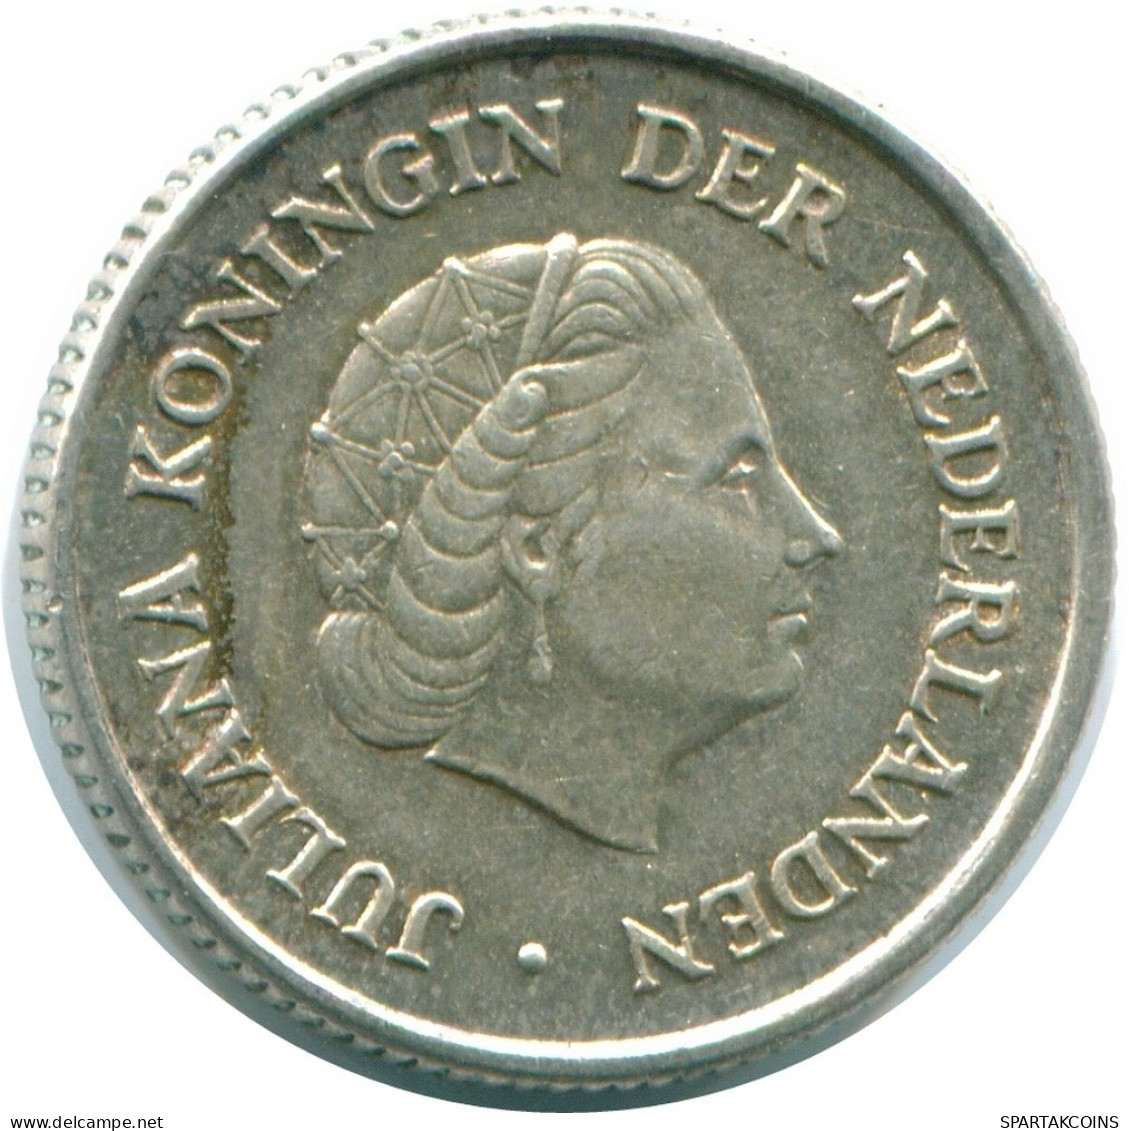 1/4 GULDEN 1963 NIEDERLÄNDISCHE ANTILLEN SILBER Koloniale Münze #NL11243.4.D.A - Antilles Néerlandaises